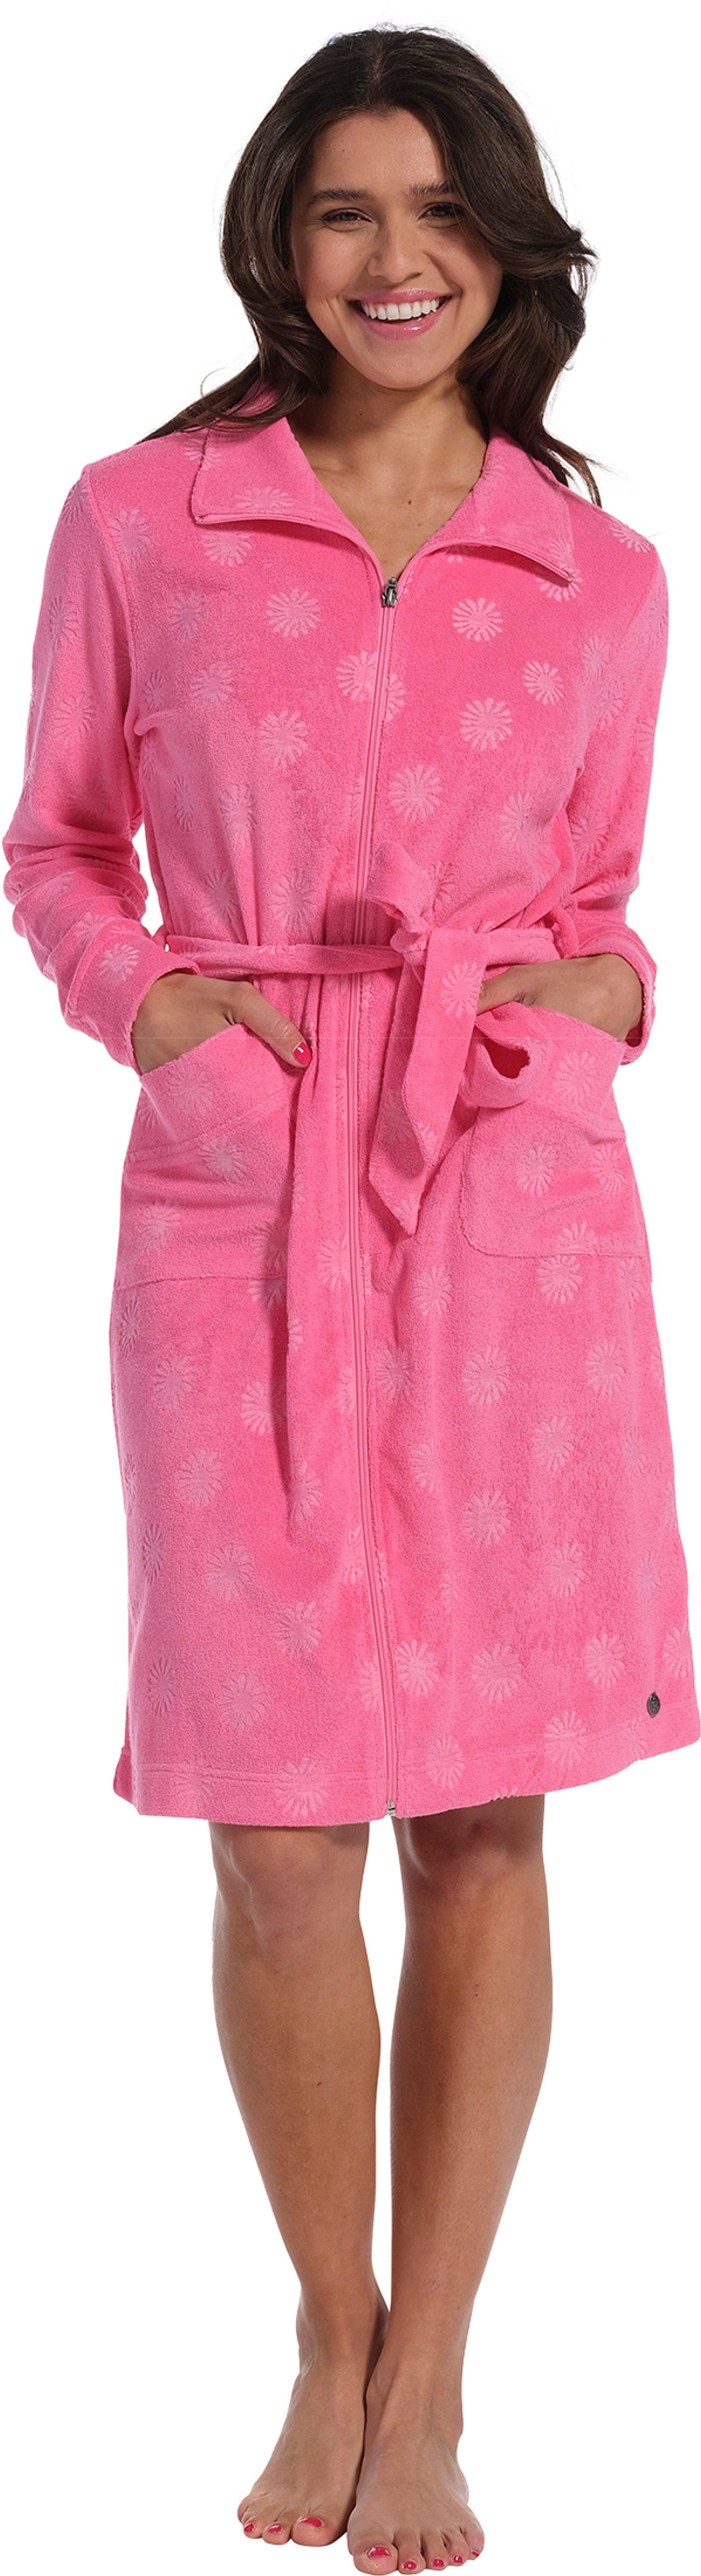 Rebelle Damenbademantel Damen Bademantel mit Reißverschluss, kurz,  Baumwoll-Mischung, Stehkragen, Reißverschluss, Pink mit geprägten Blumen